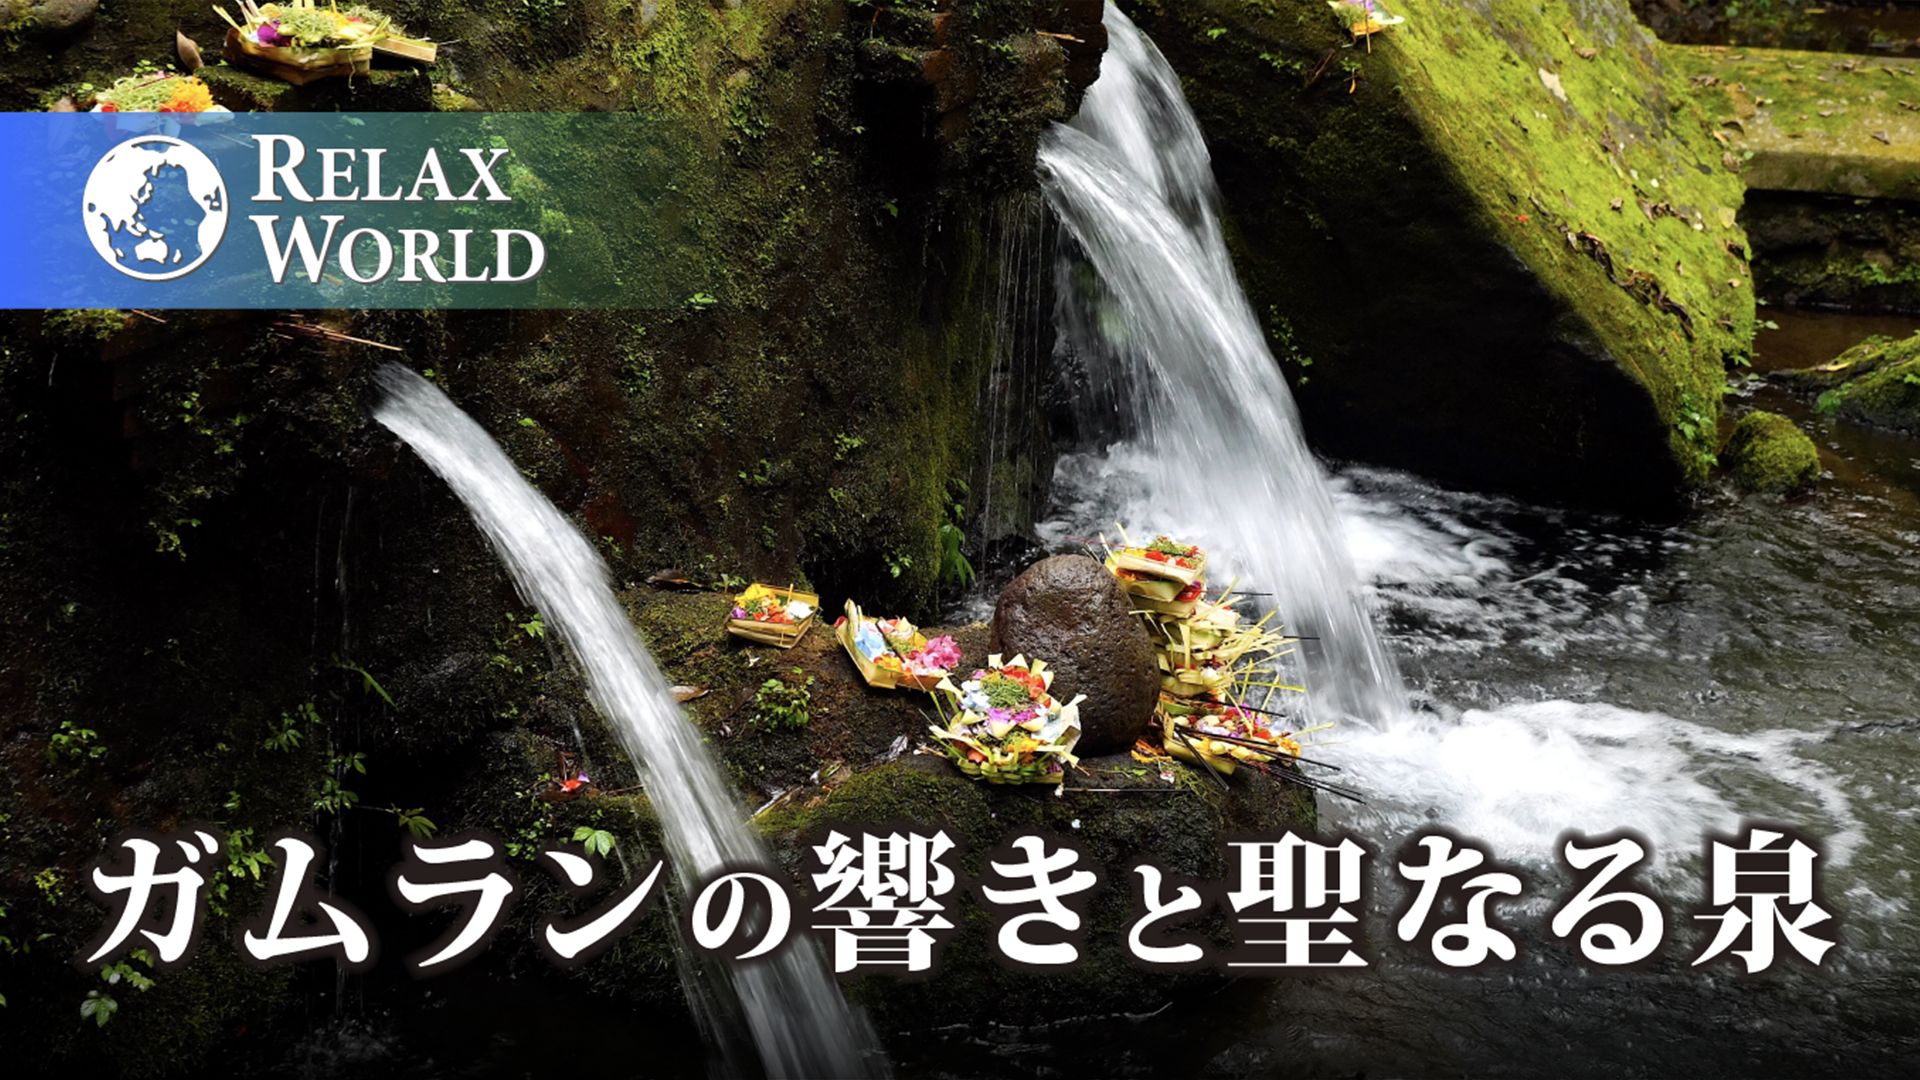 ガムランの響きと聖なる泉【RELAX WORLD】